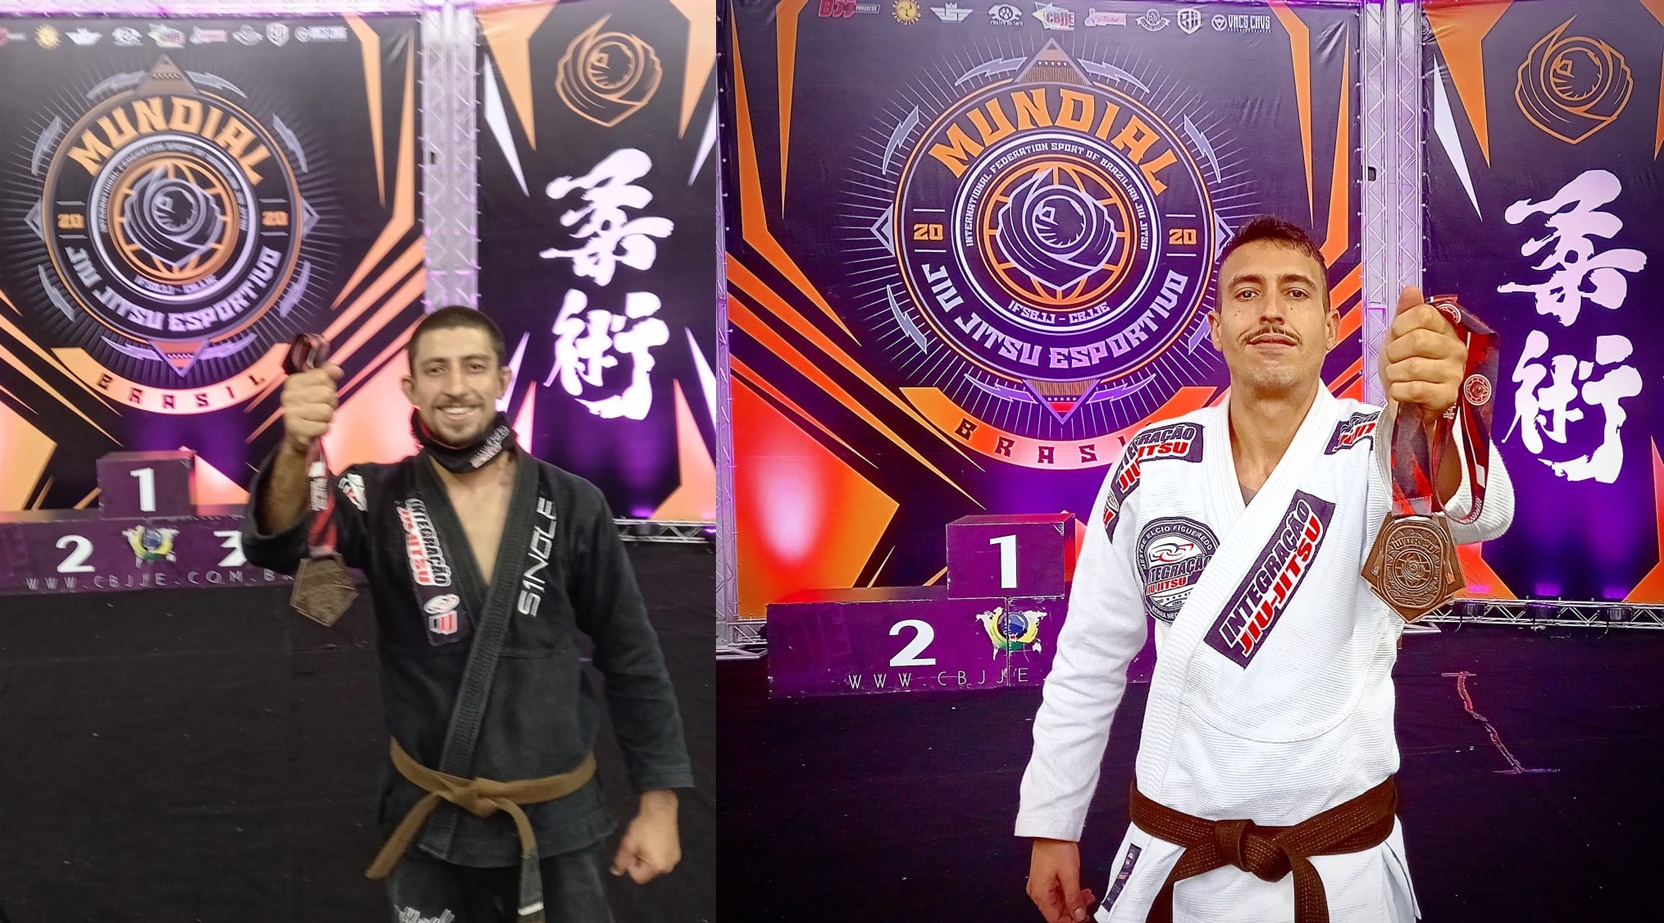 Serra Negra tem medalhistas em Mundial de Jiu-Jitsu CBJJE